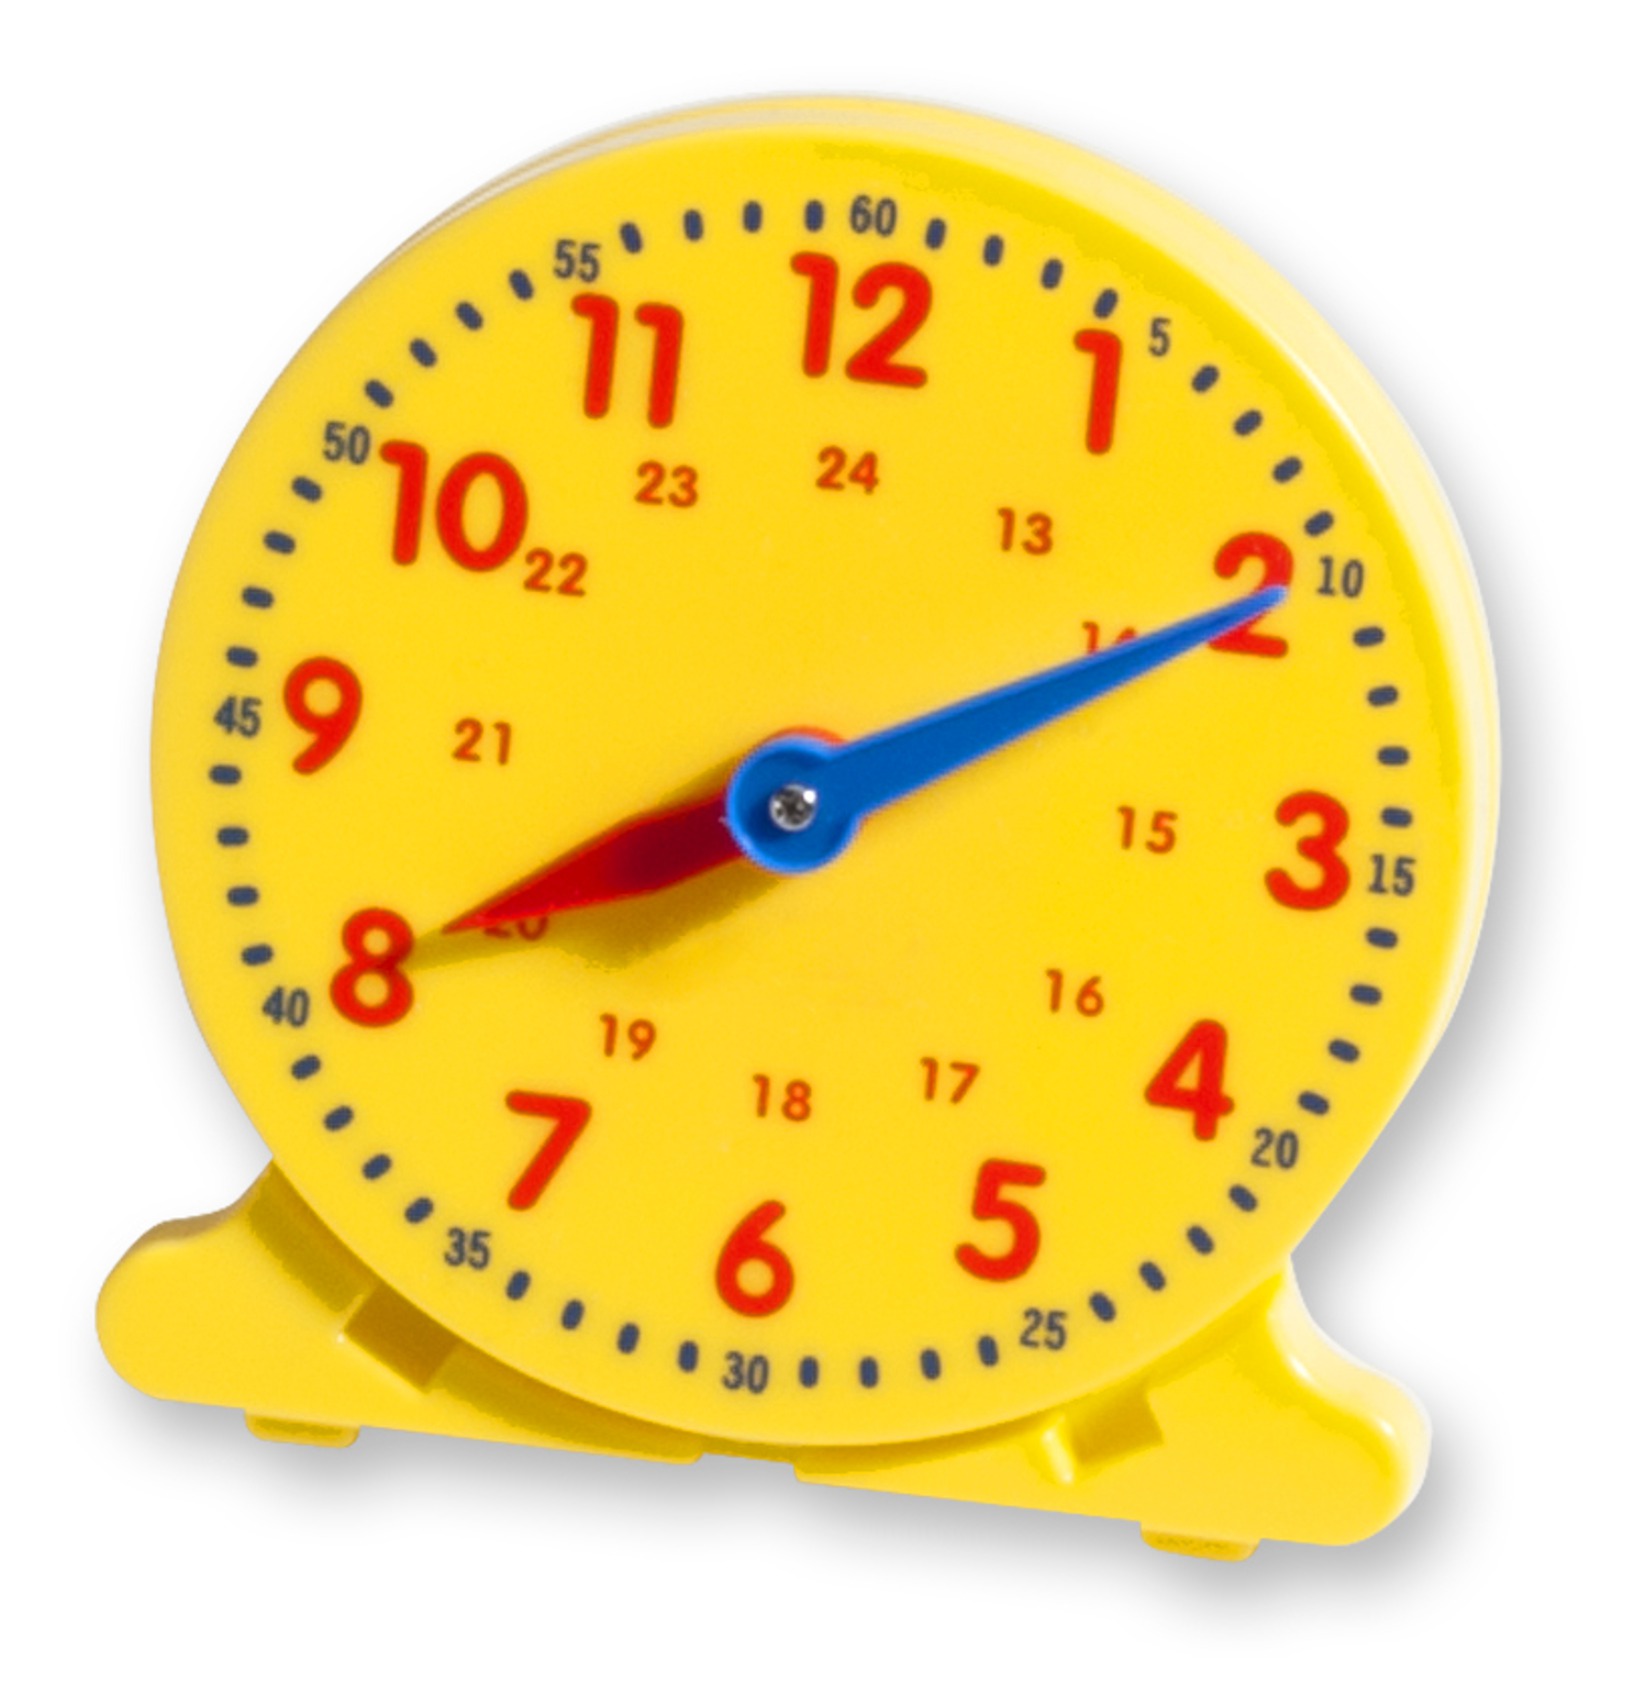 Циферблат часов для обучения. Часы обучающие для детей. Часы со стрелками для детей. Модель часов. Часы циферблат для детей.